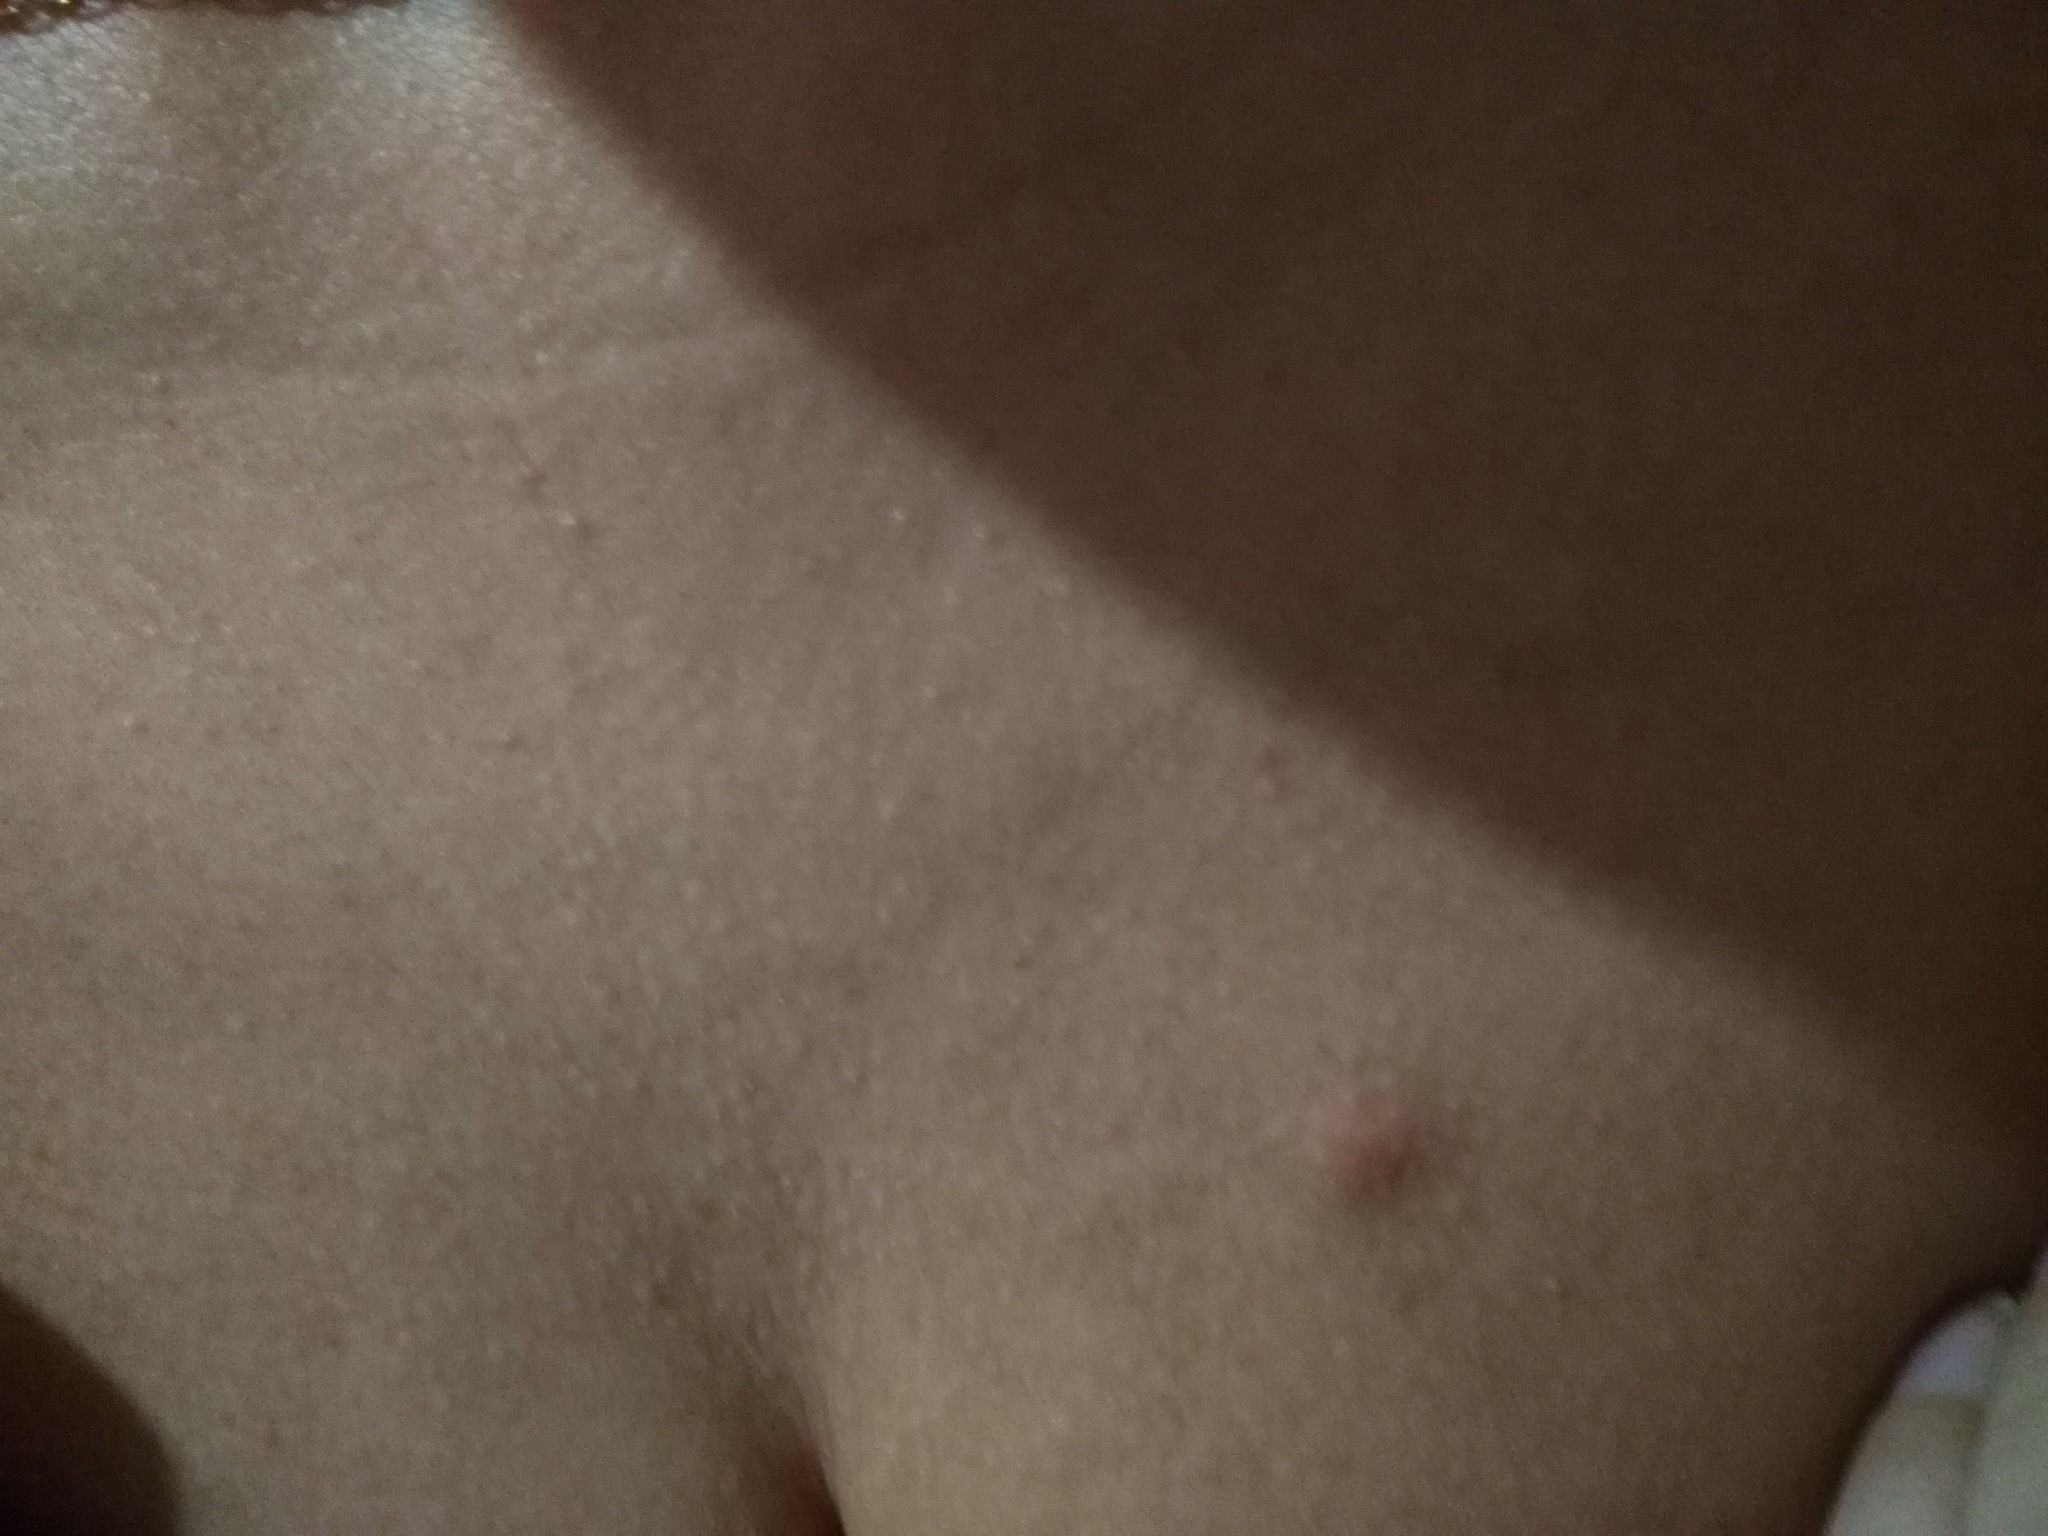 красное уплотнение на груди у женщин (120) фото